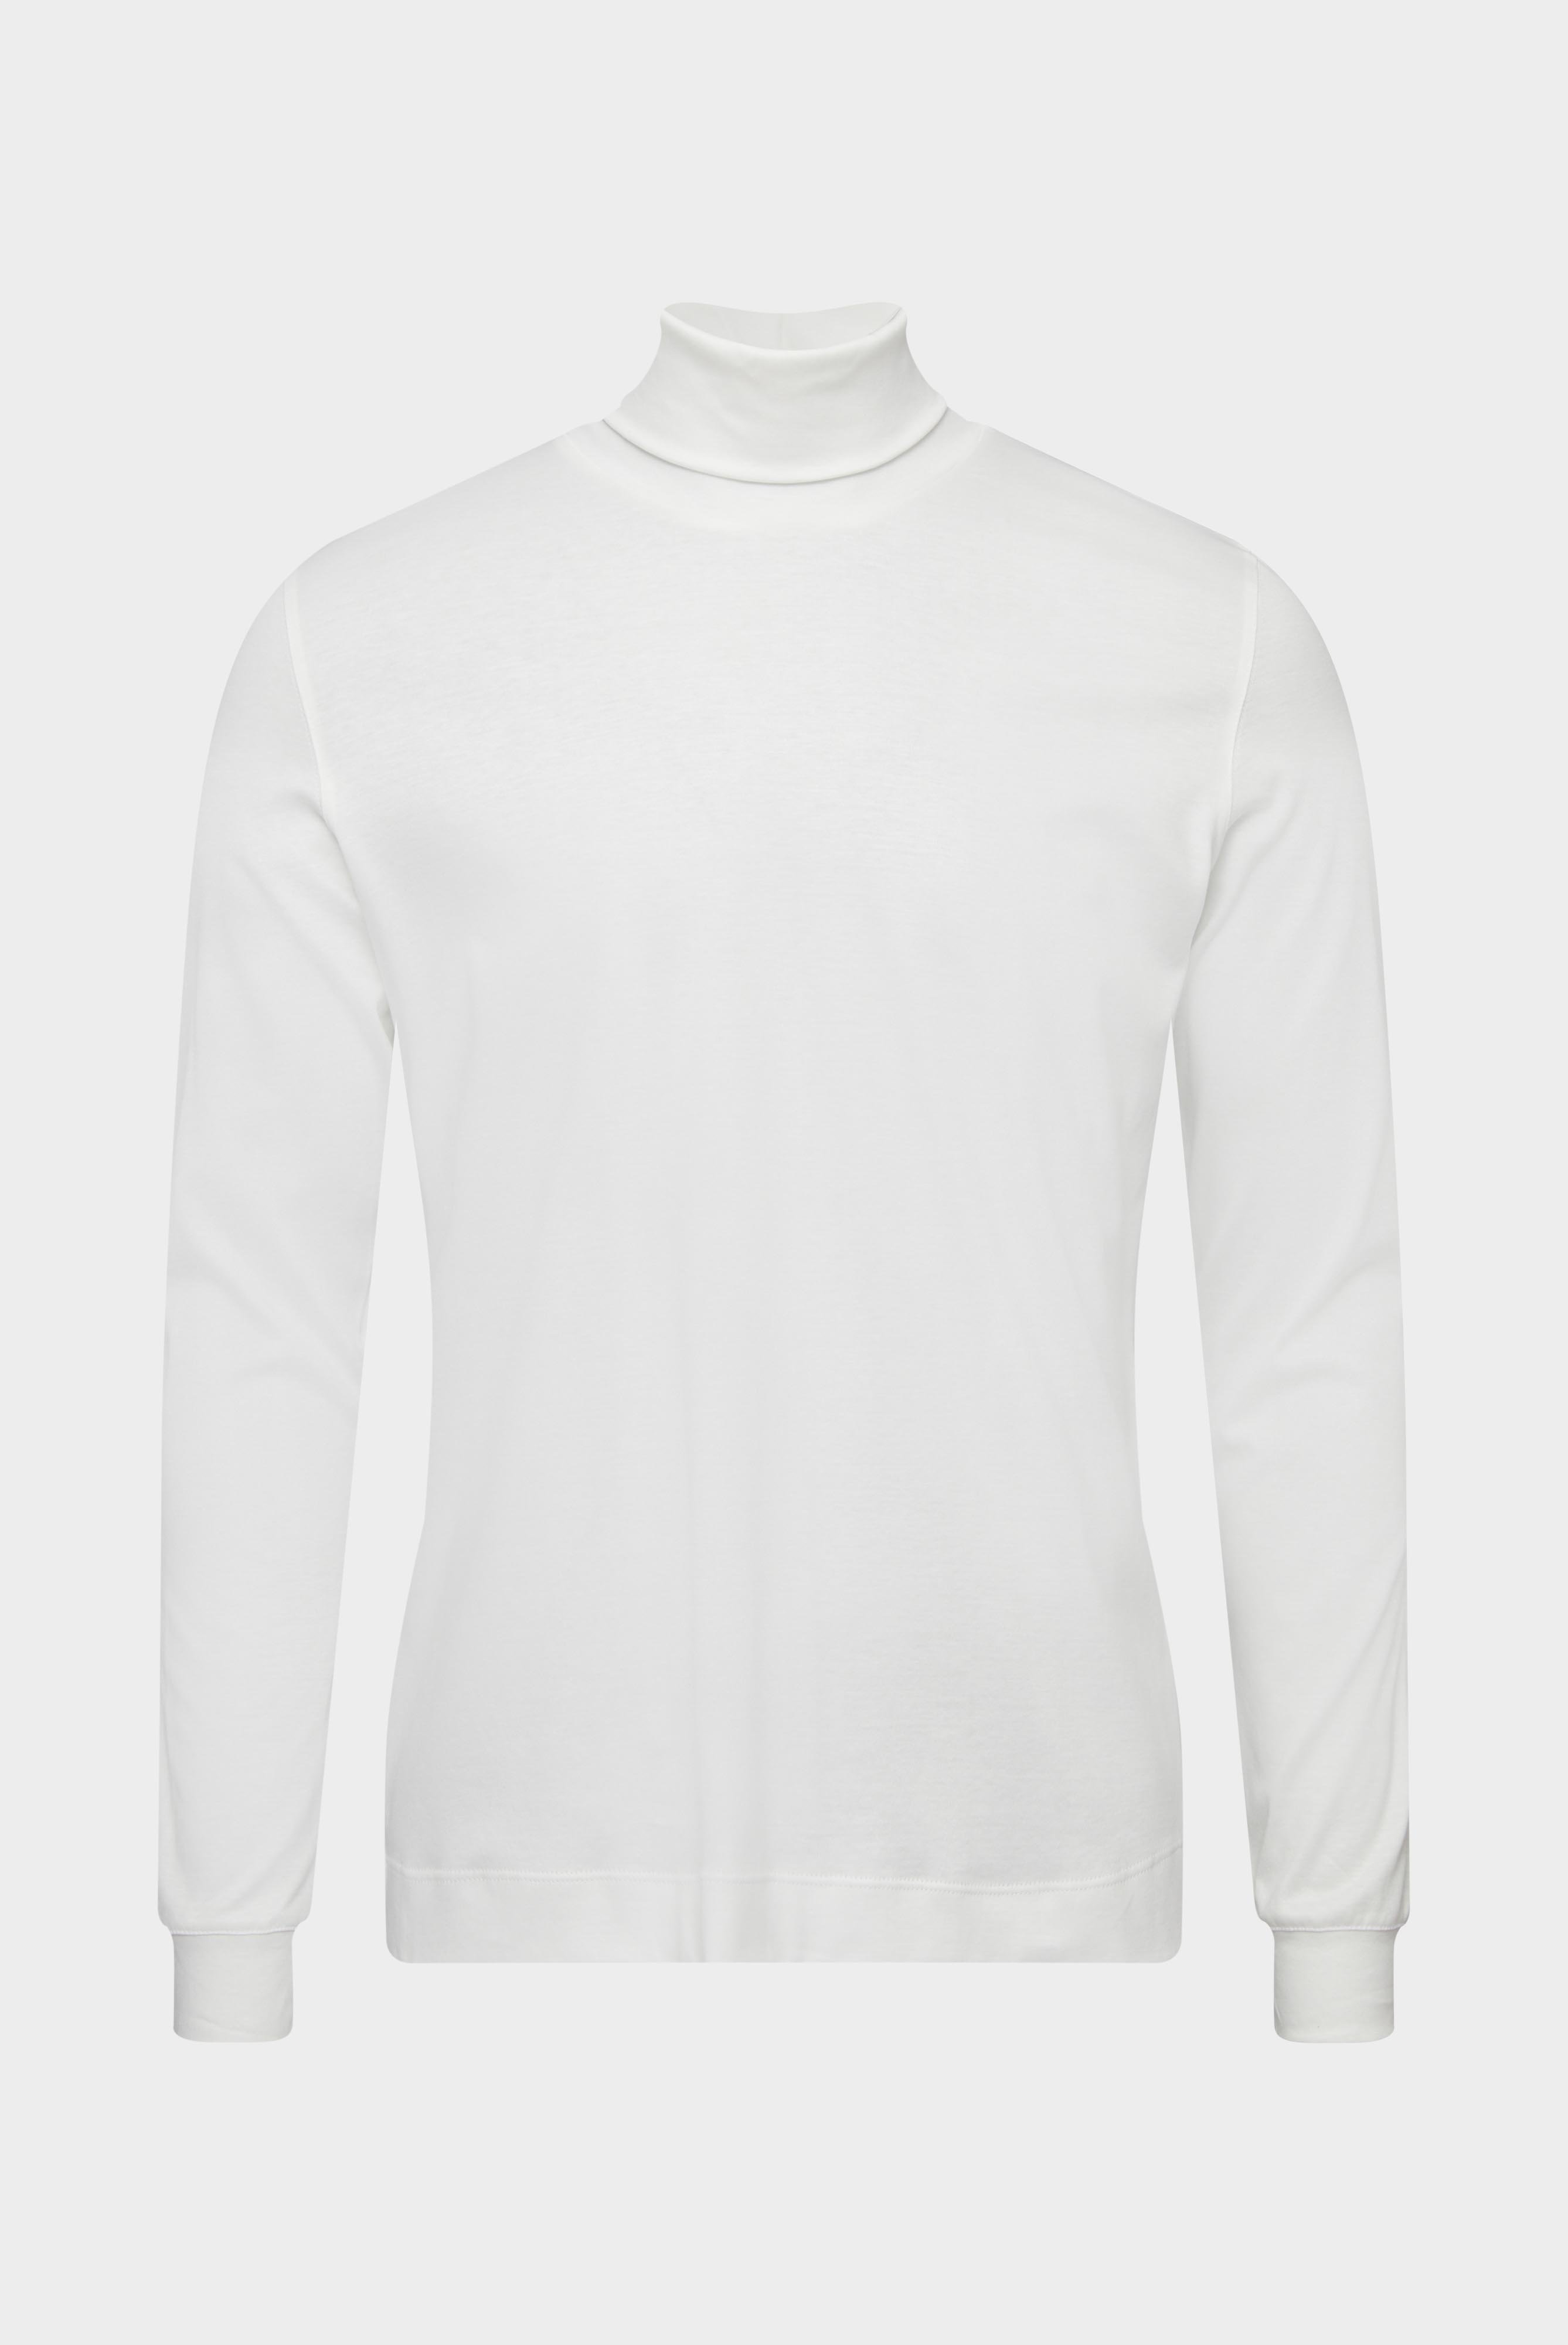 T-Shirts+Rollkragenshirt aus Jersey+20.1719.UX.180031.100.XL